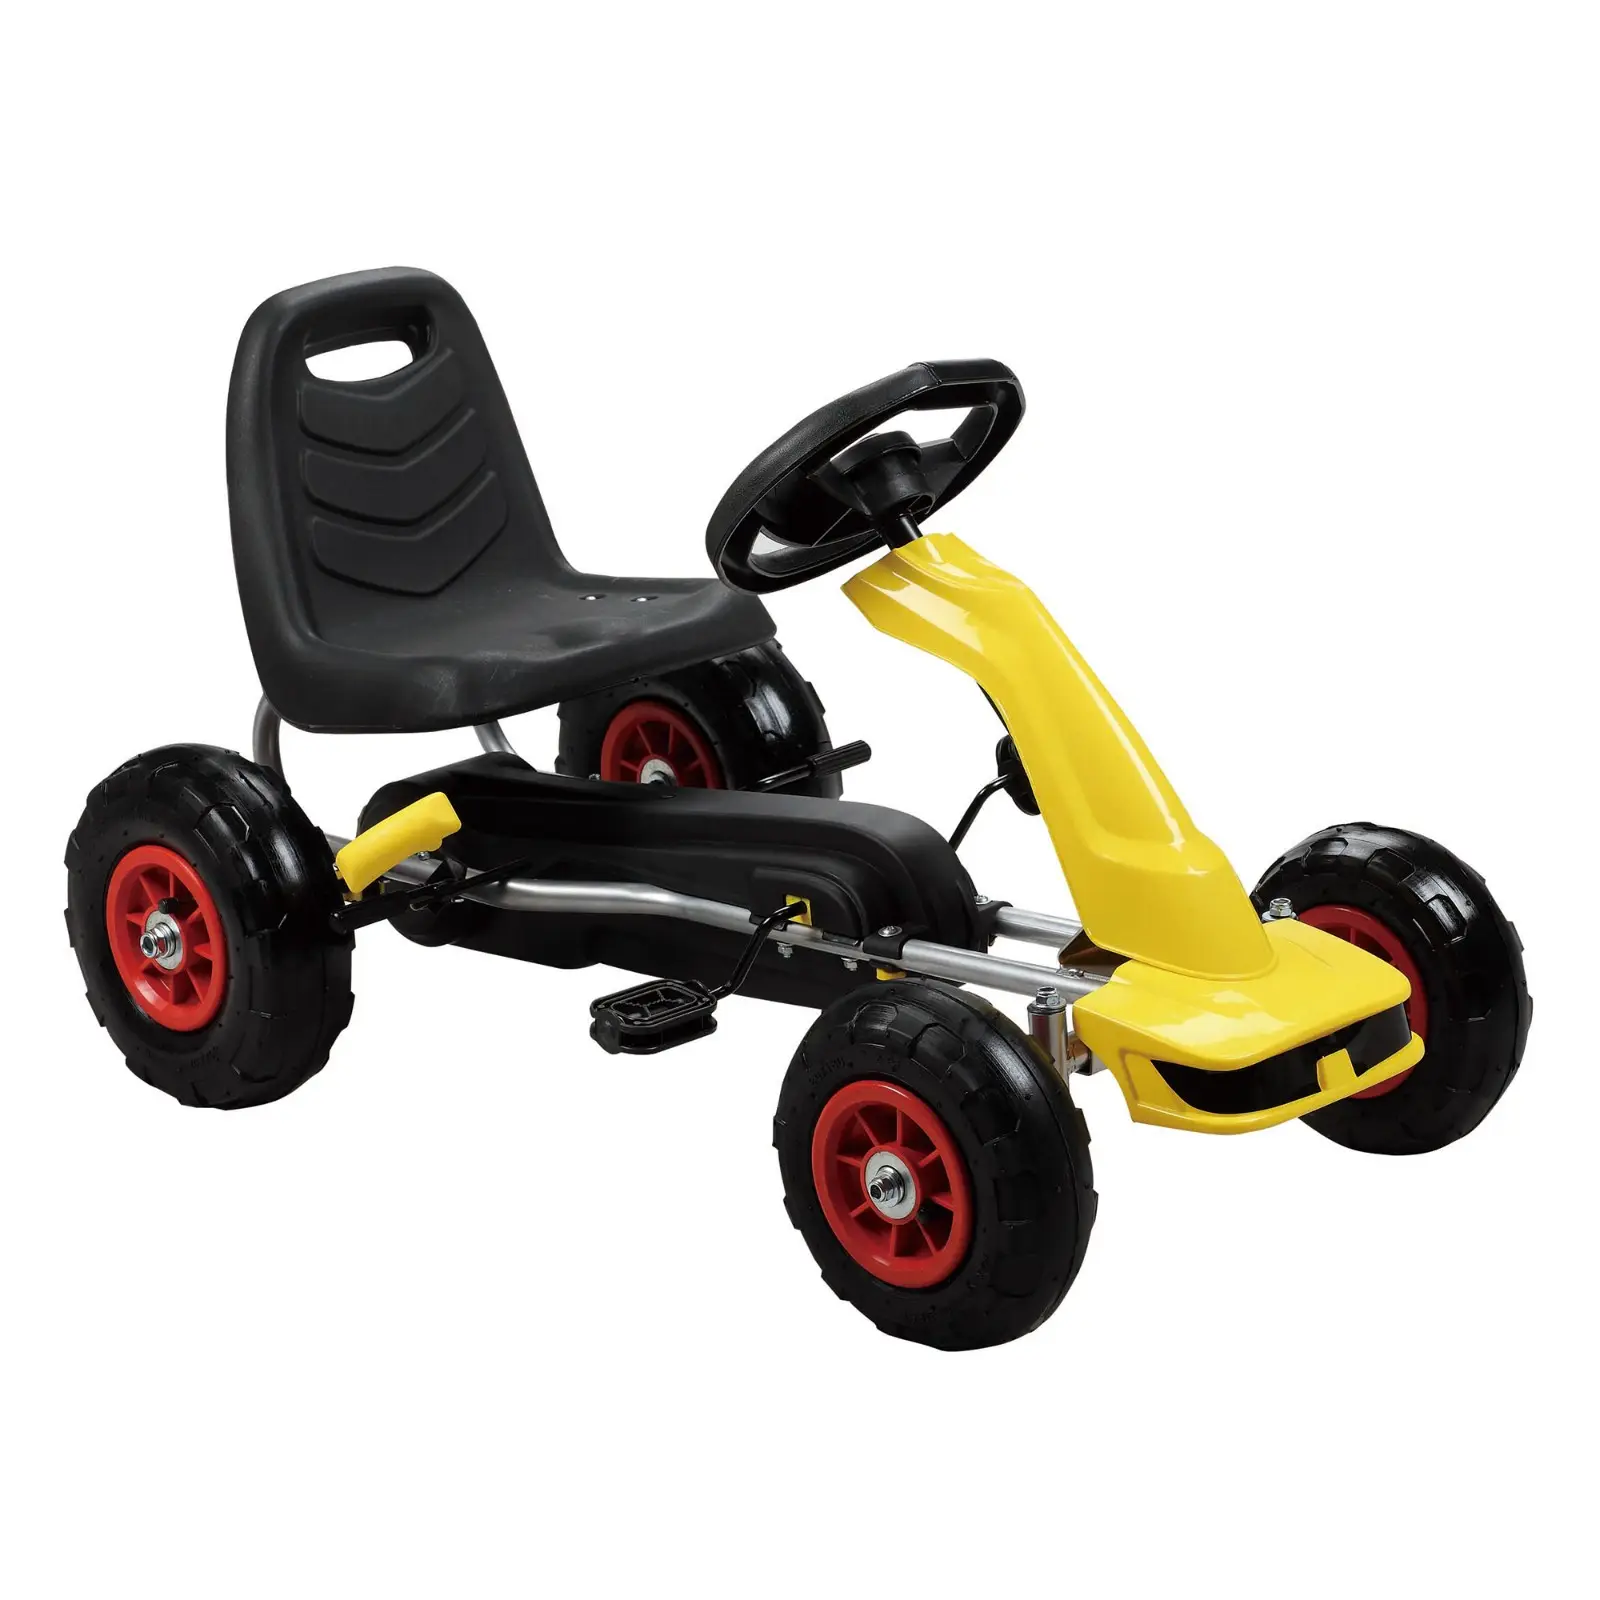 Buggy-Auto 4x4 Pedal-Go-Karts zu verkaufen mit Fahrtgetriebe Bremsenhebel für Kinder Pedal-Go-Kart